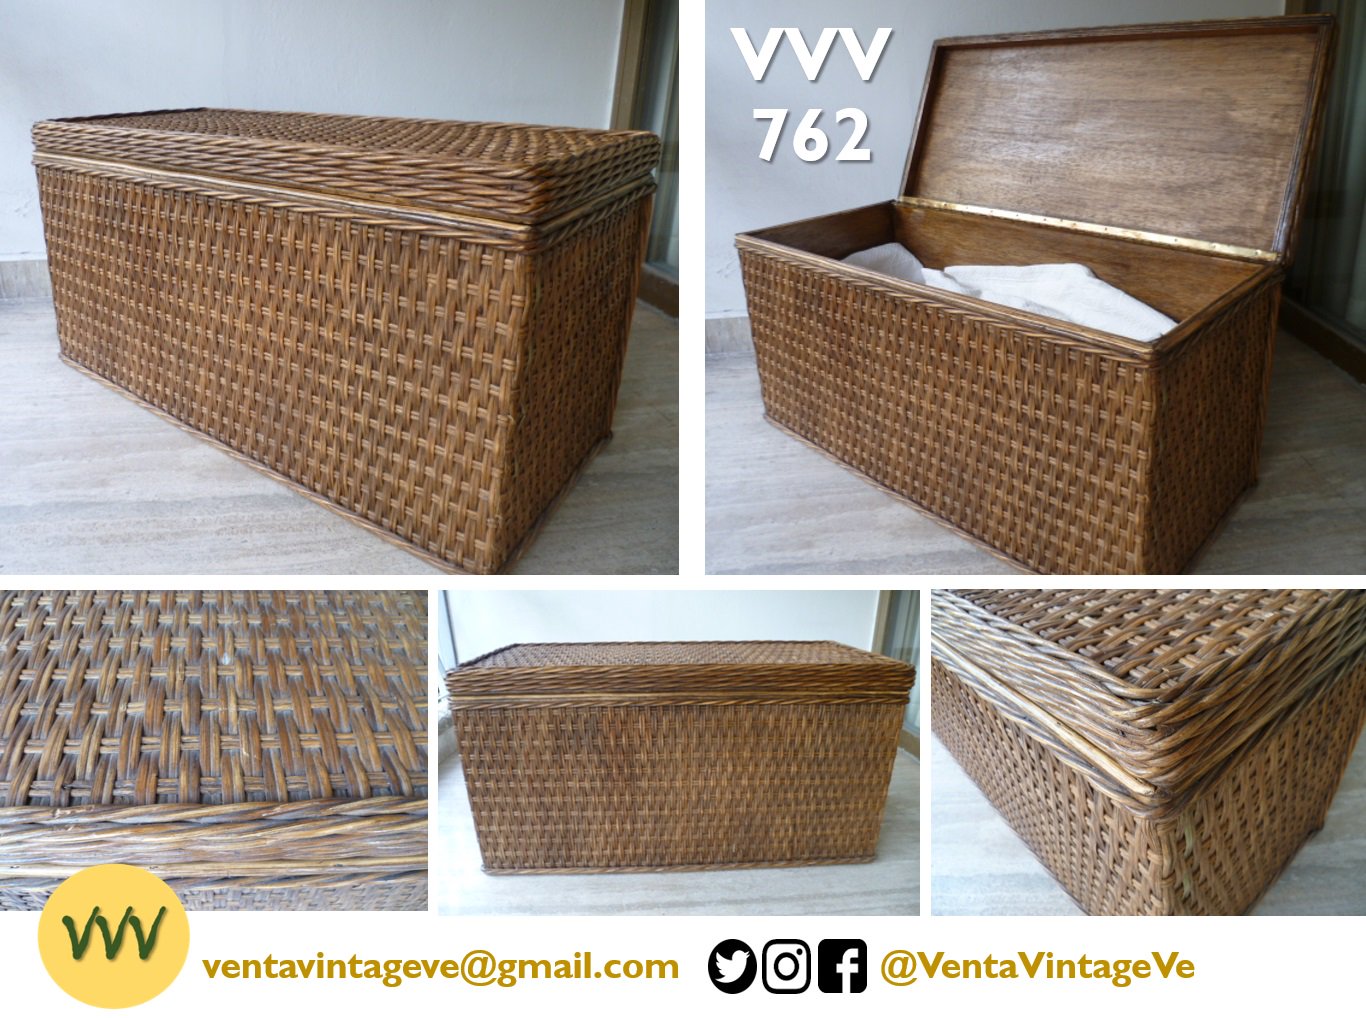 VentaVintageVe on X: VVV762 No es el baúl de los recuerdos… ¿o sí? Este  bonito baúl rectangular de mimbre es perfecto para colocar al pie de la  cama. Medidas 92 x 48